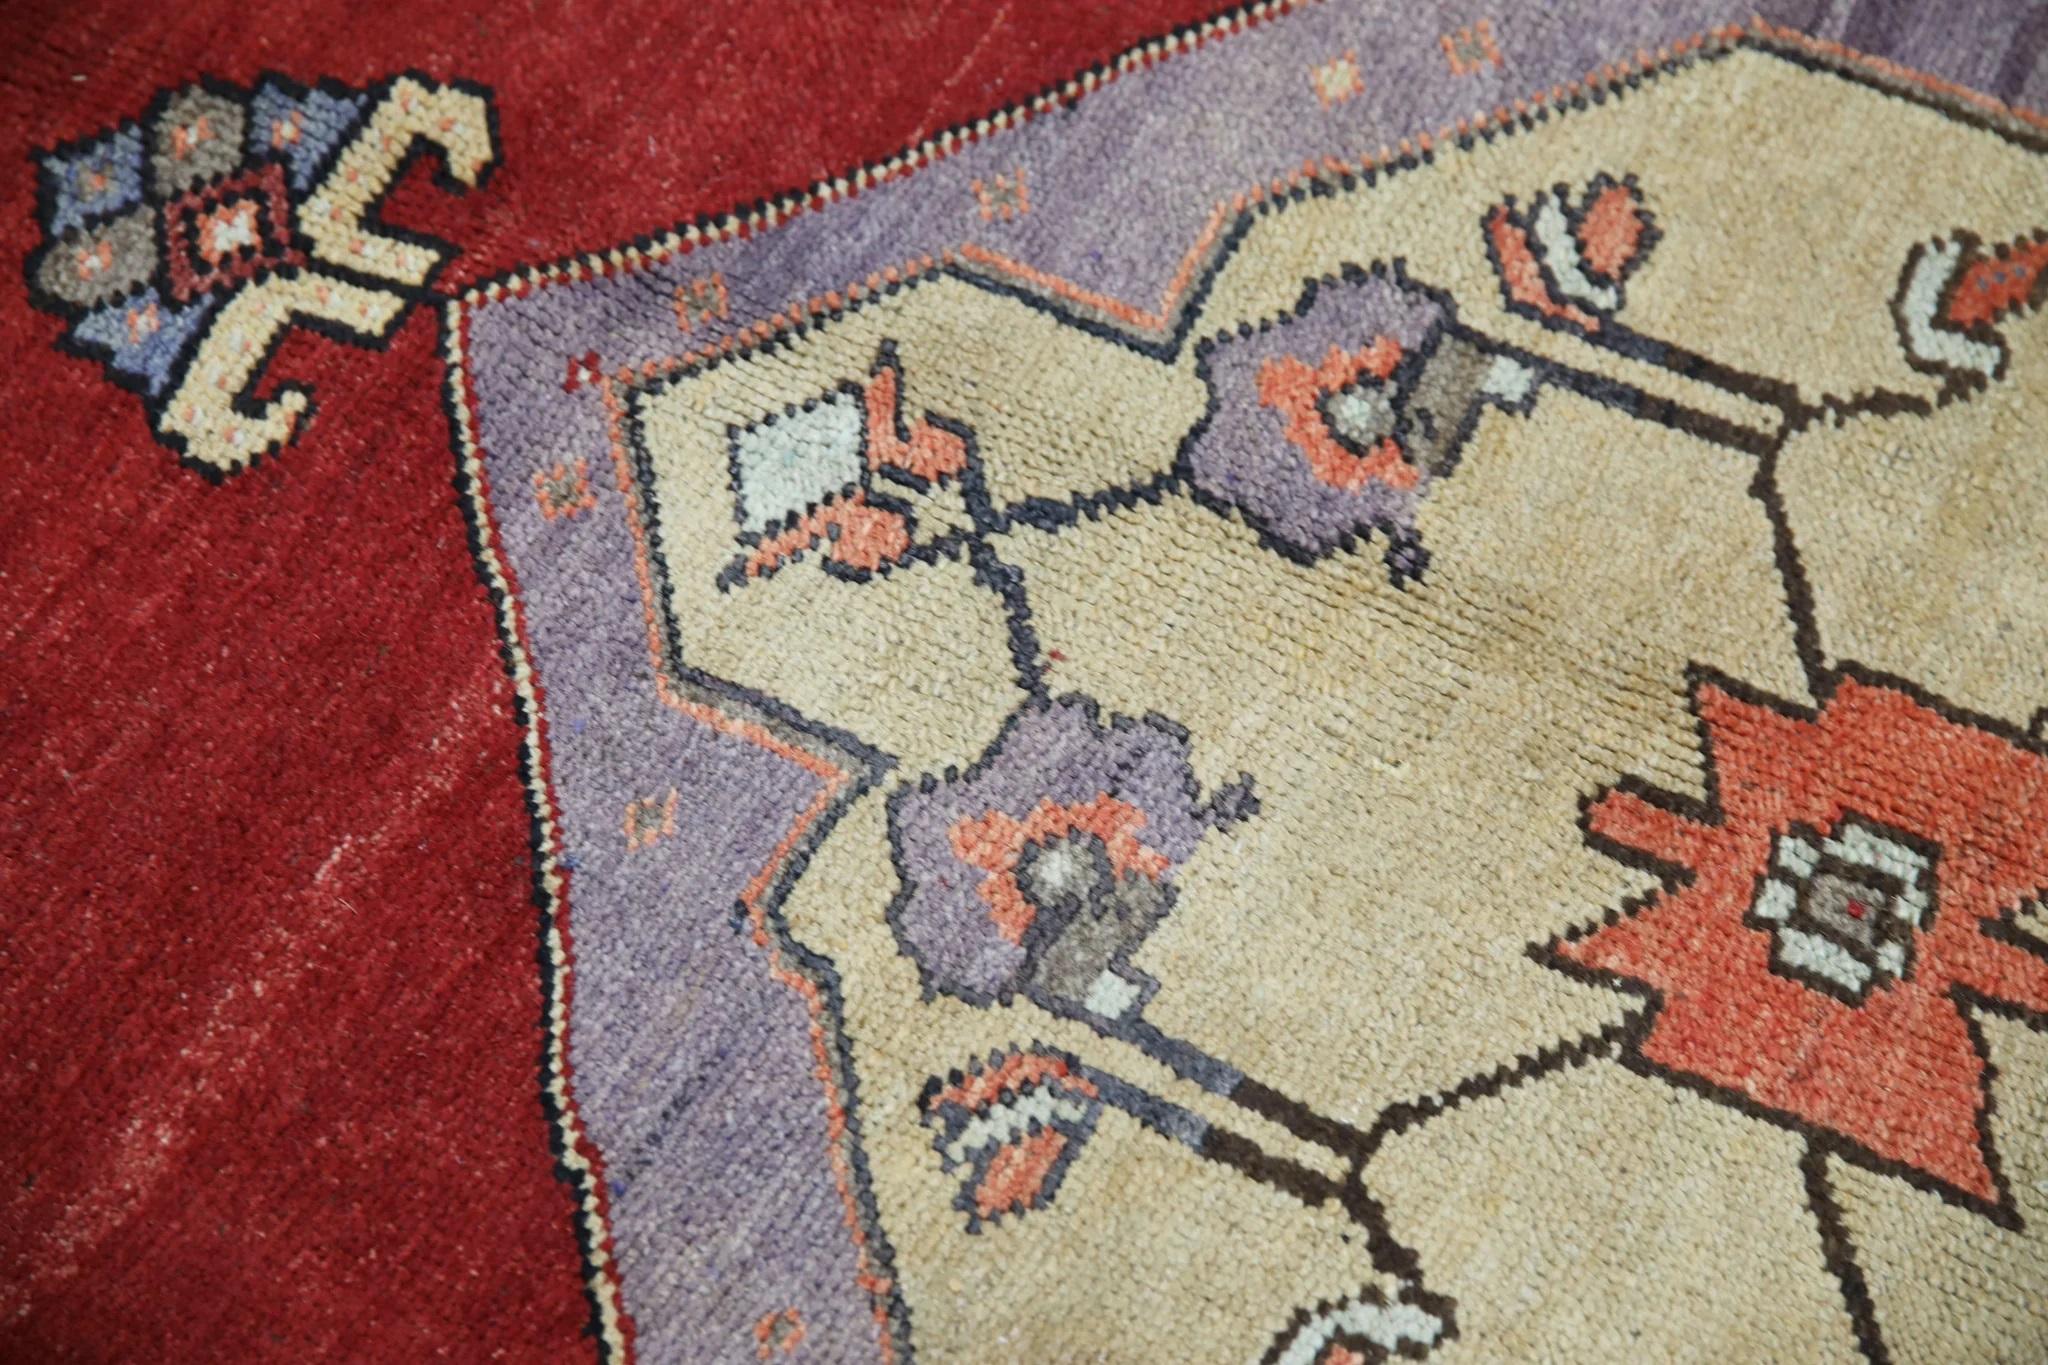 Vintage By est un tapis vintage en laine nouée à la main, fabriqué avec soin par des artisans qualifiés selon des techniques traditionnelles transmises de génération en génération. Ce tapis exquis s'enorgueillit d'une étonnante gamme de teintures